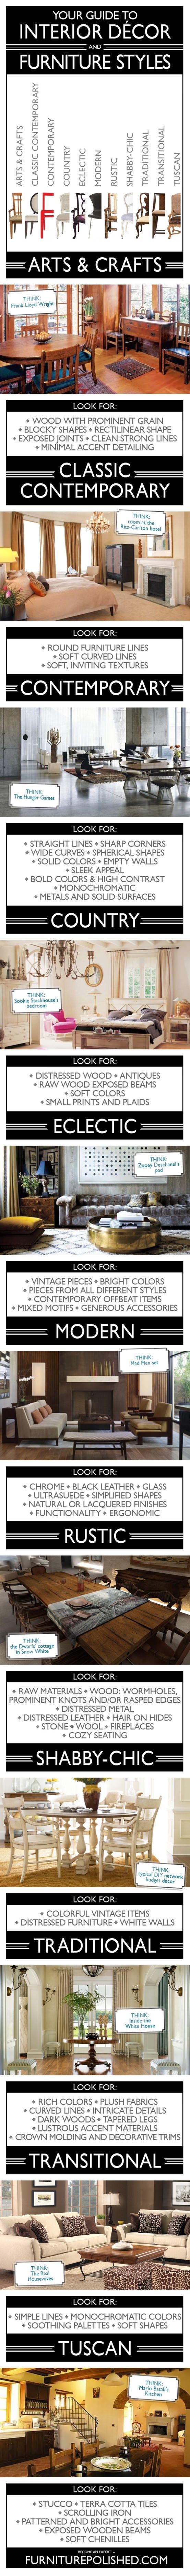 Interior Decor & Furniture Styles Guide: pretty good breakdown…classic contemporary